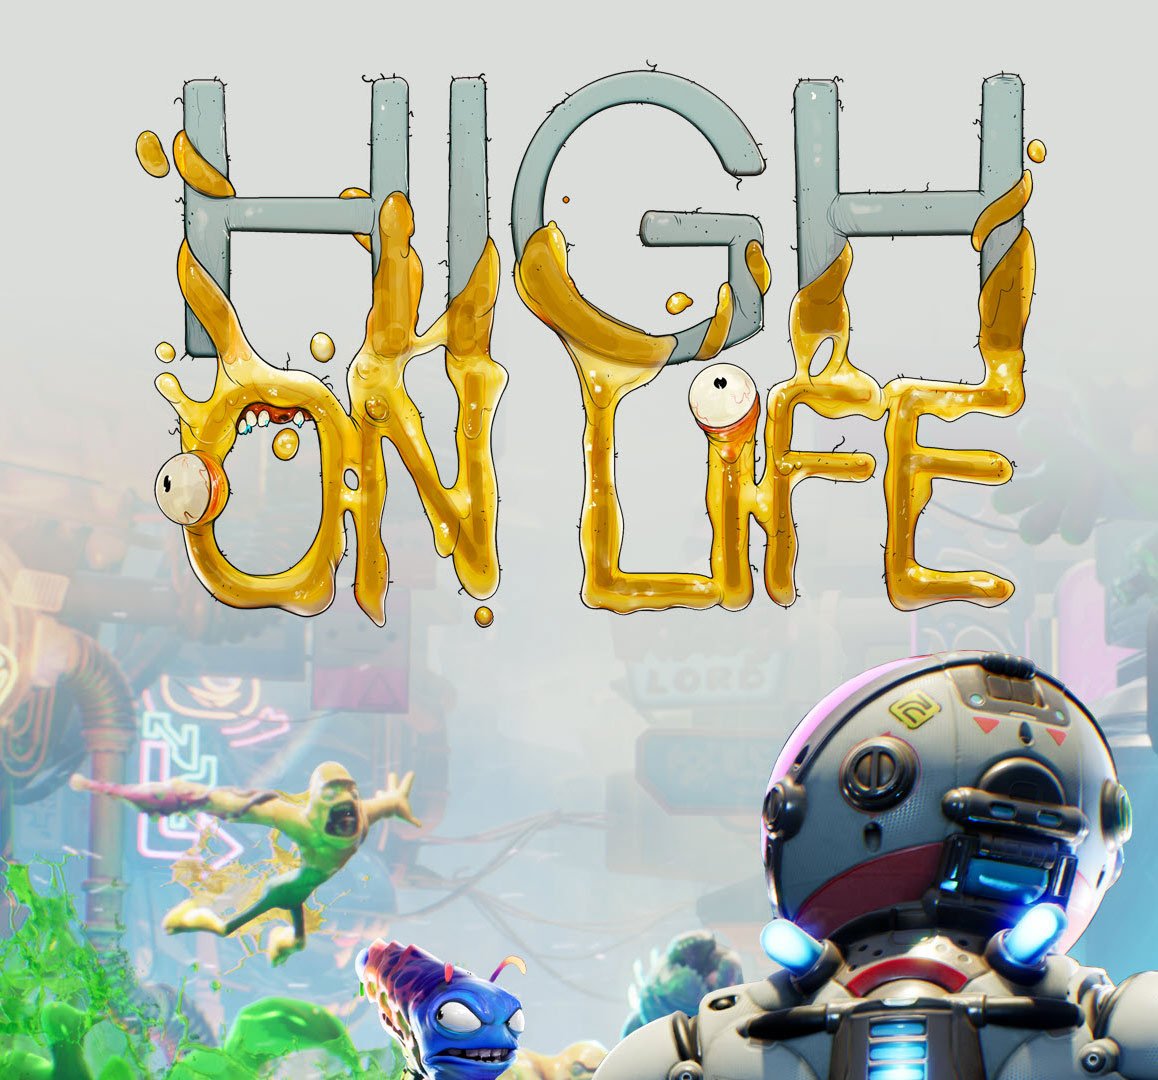 High on Life receberá novos conteúdos em breve